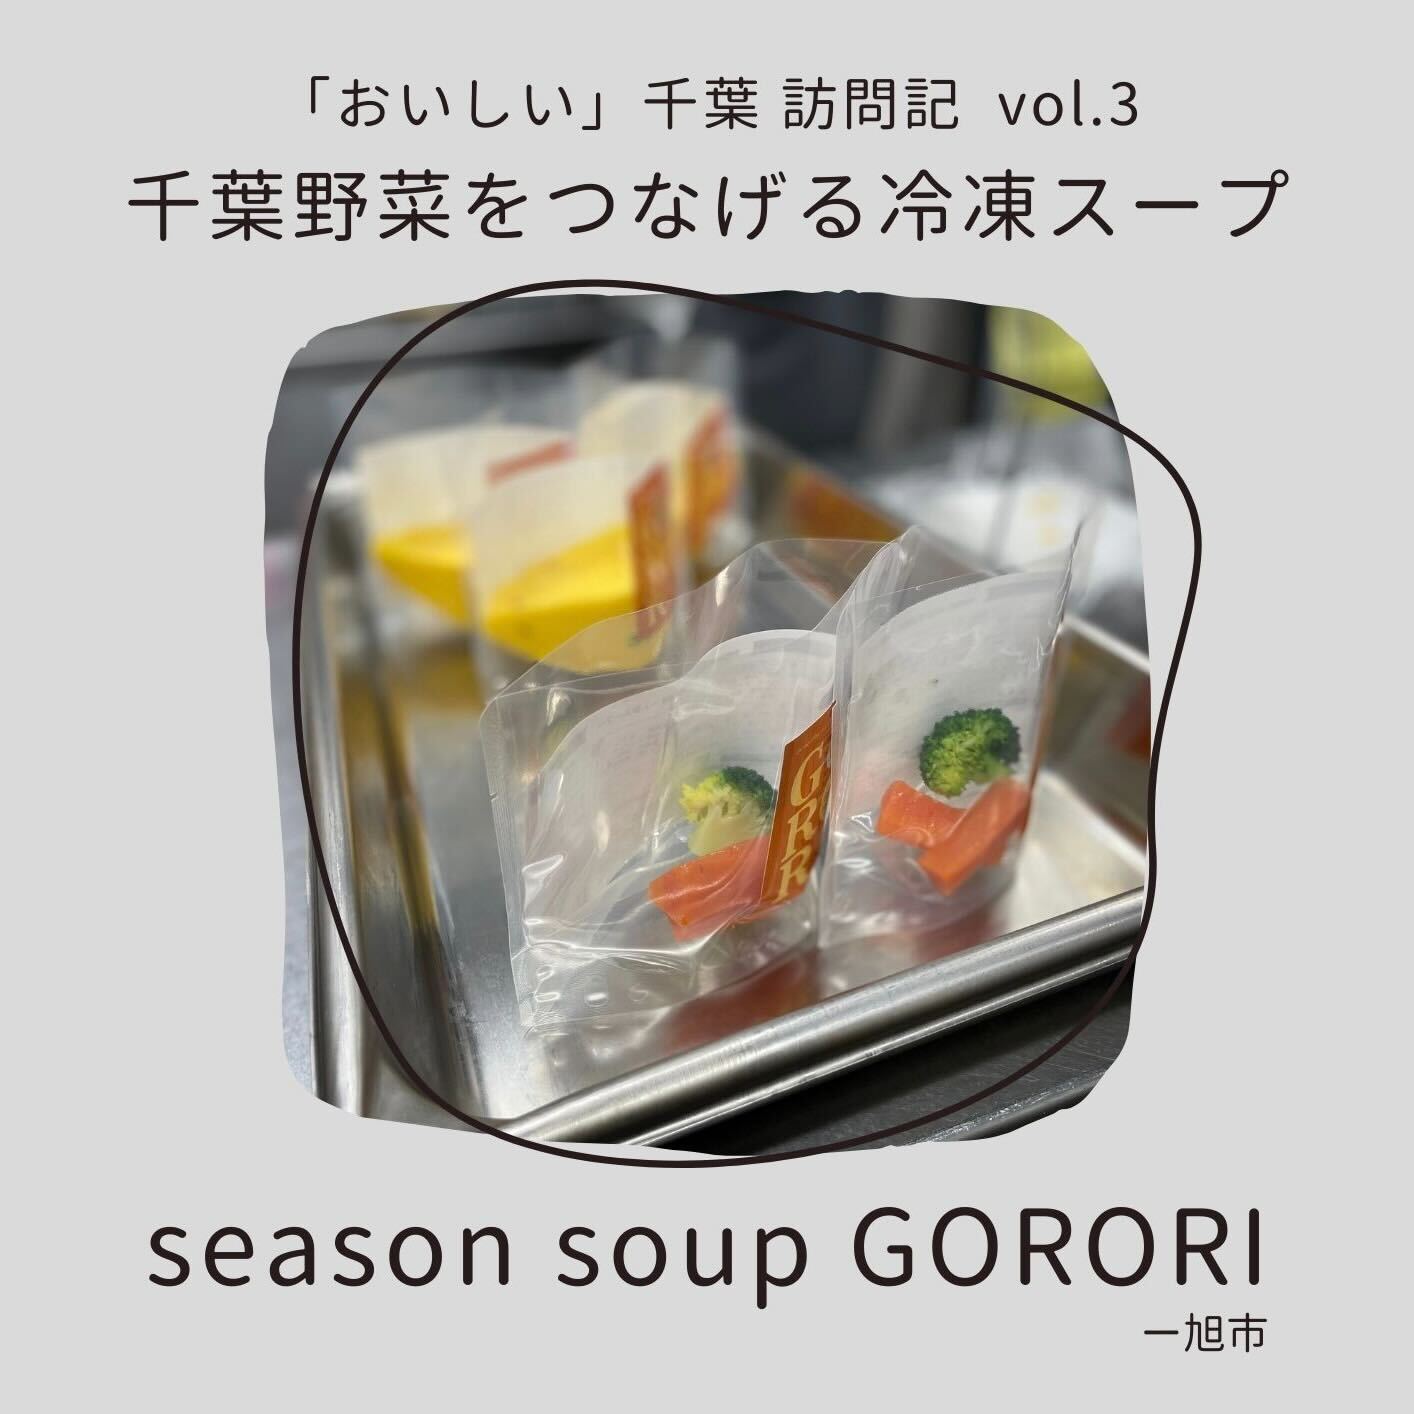 「おいしい」千葉訪問記vol.3～千葉野菜をつなげる冷凍スープ「season soup GORORI」編～のサムネイル